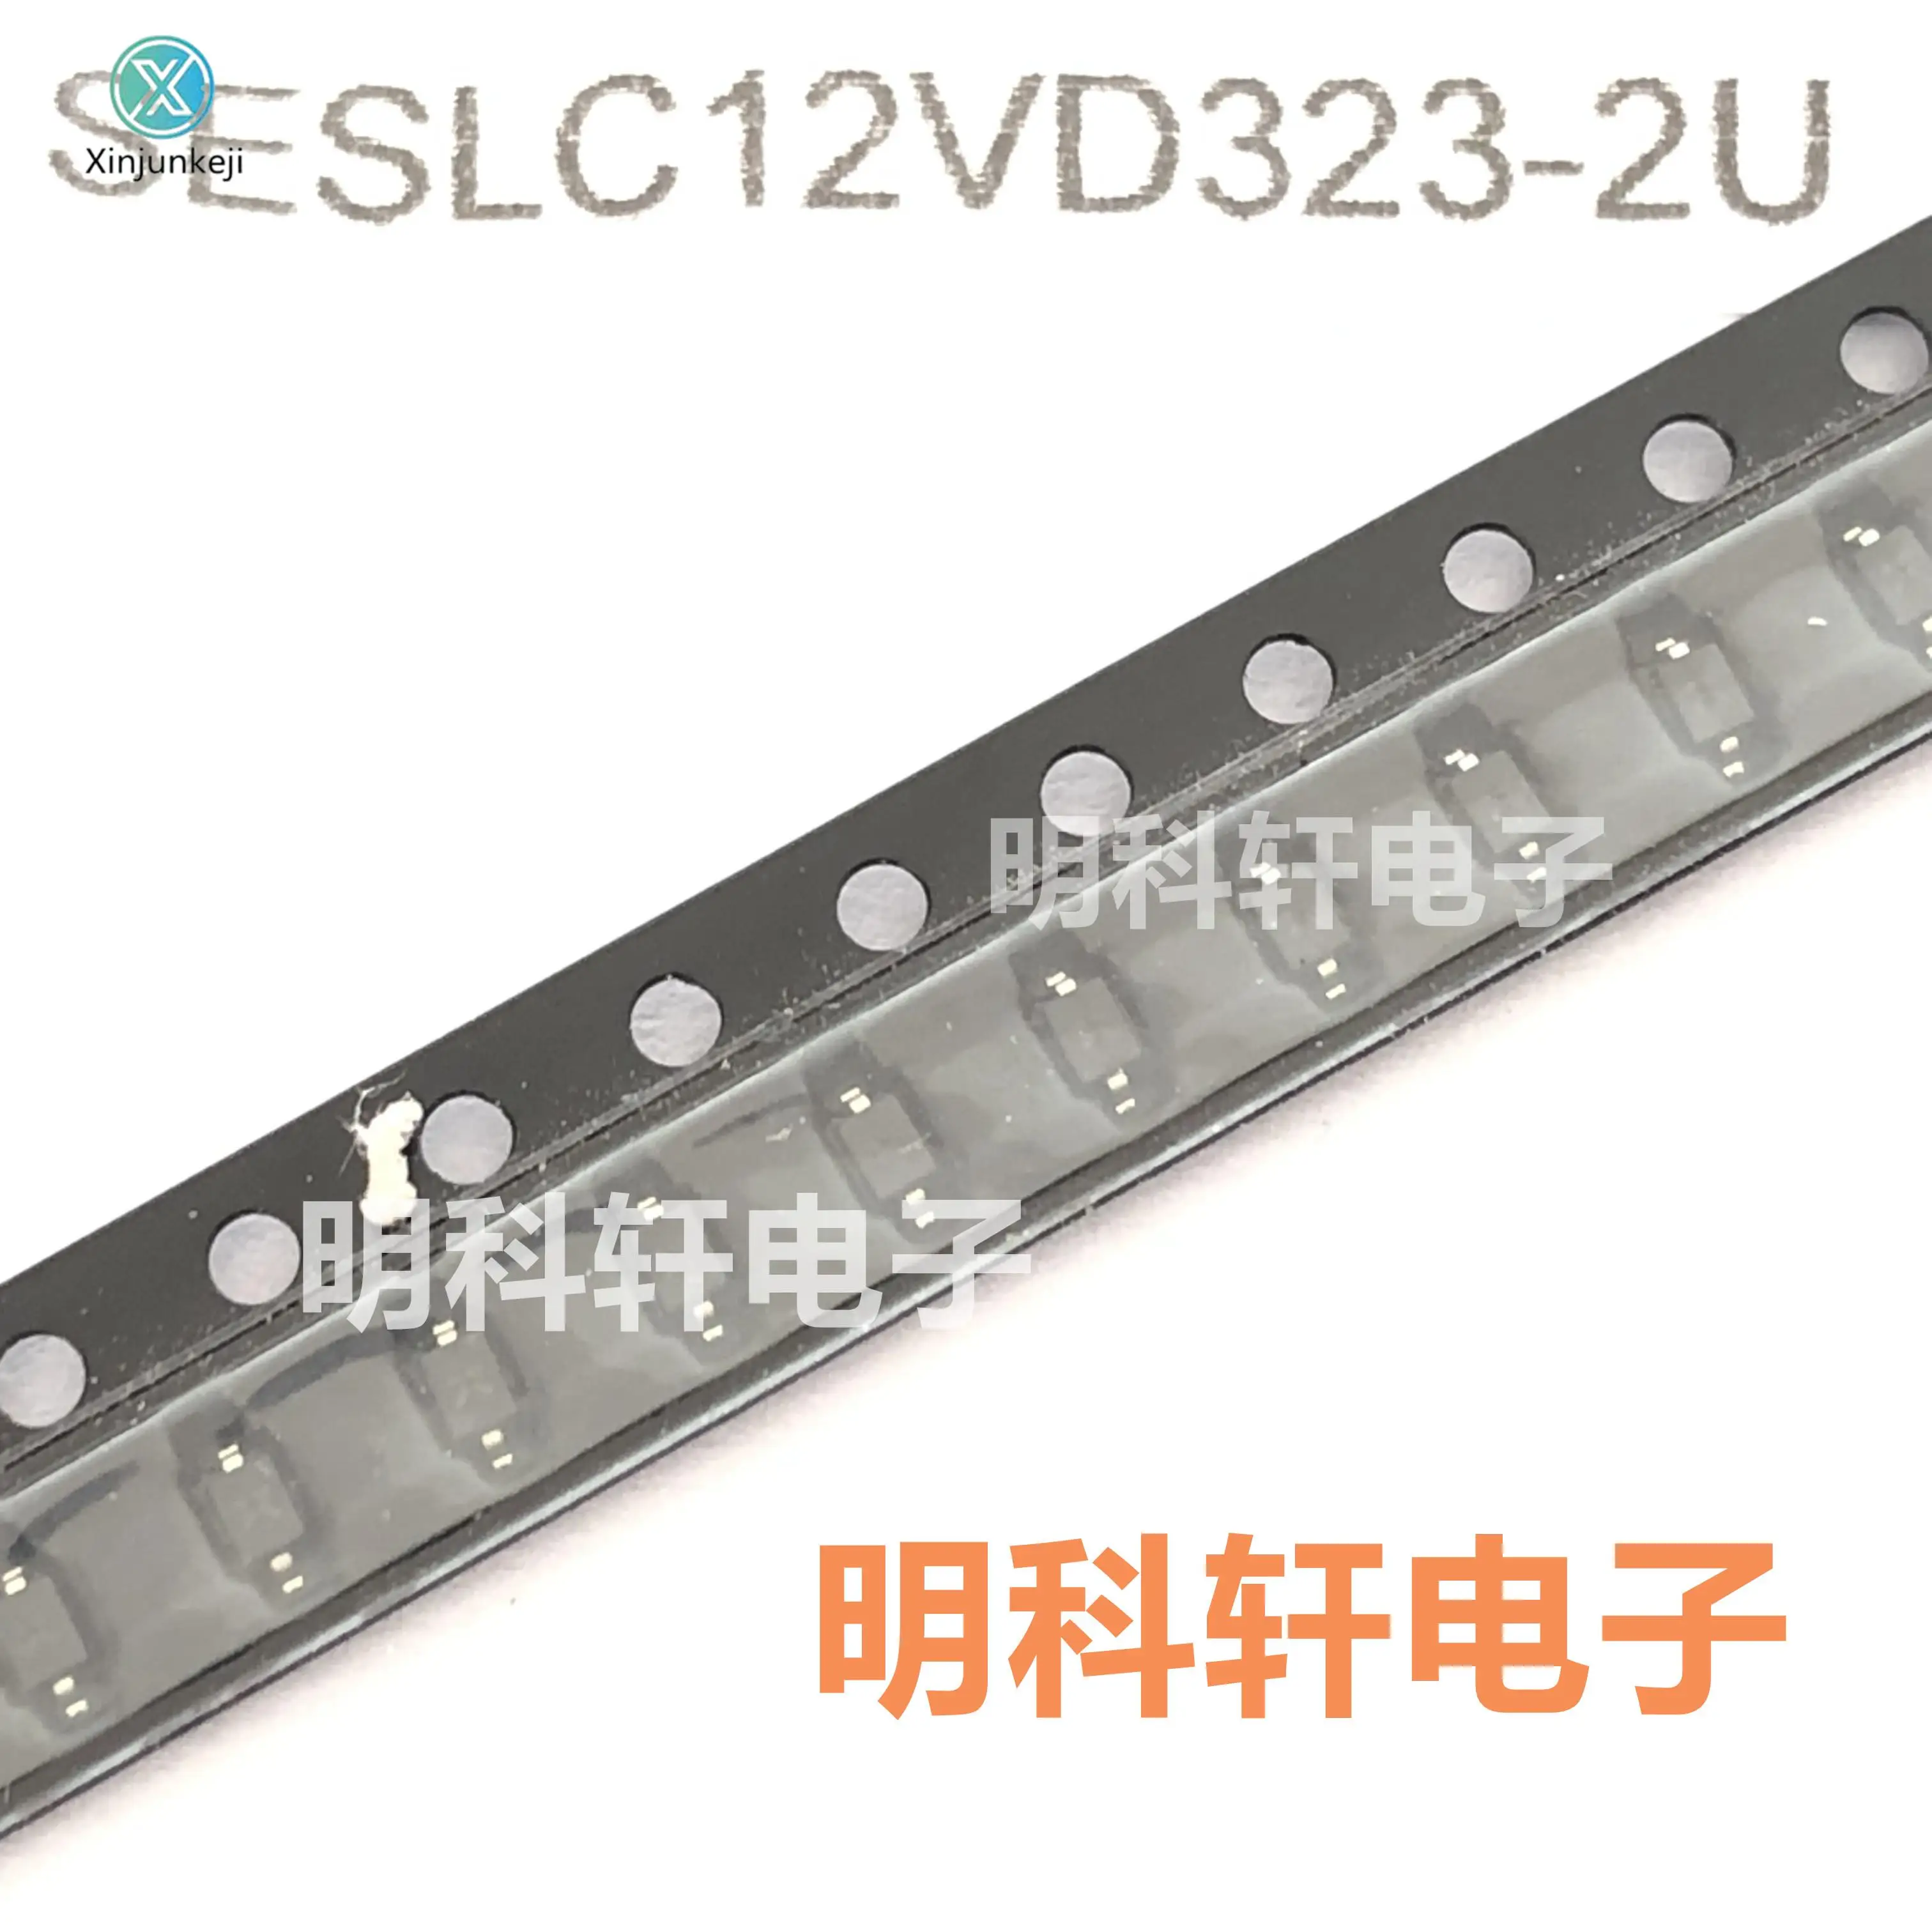 

Оригинальная новая фотоэлектрическая защитная трубка SOD323, 50 шт.